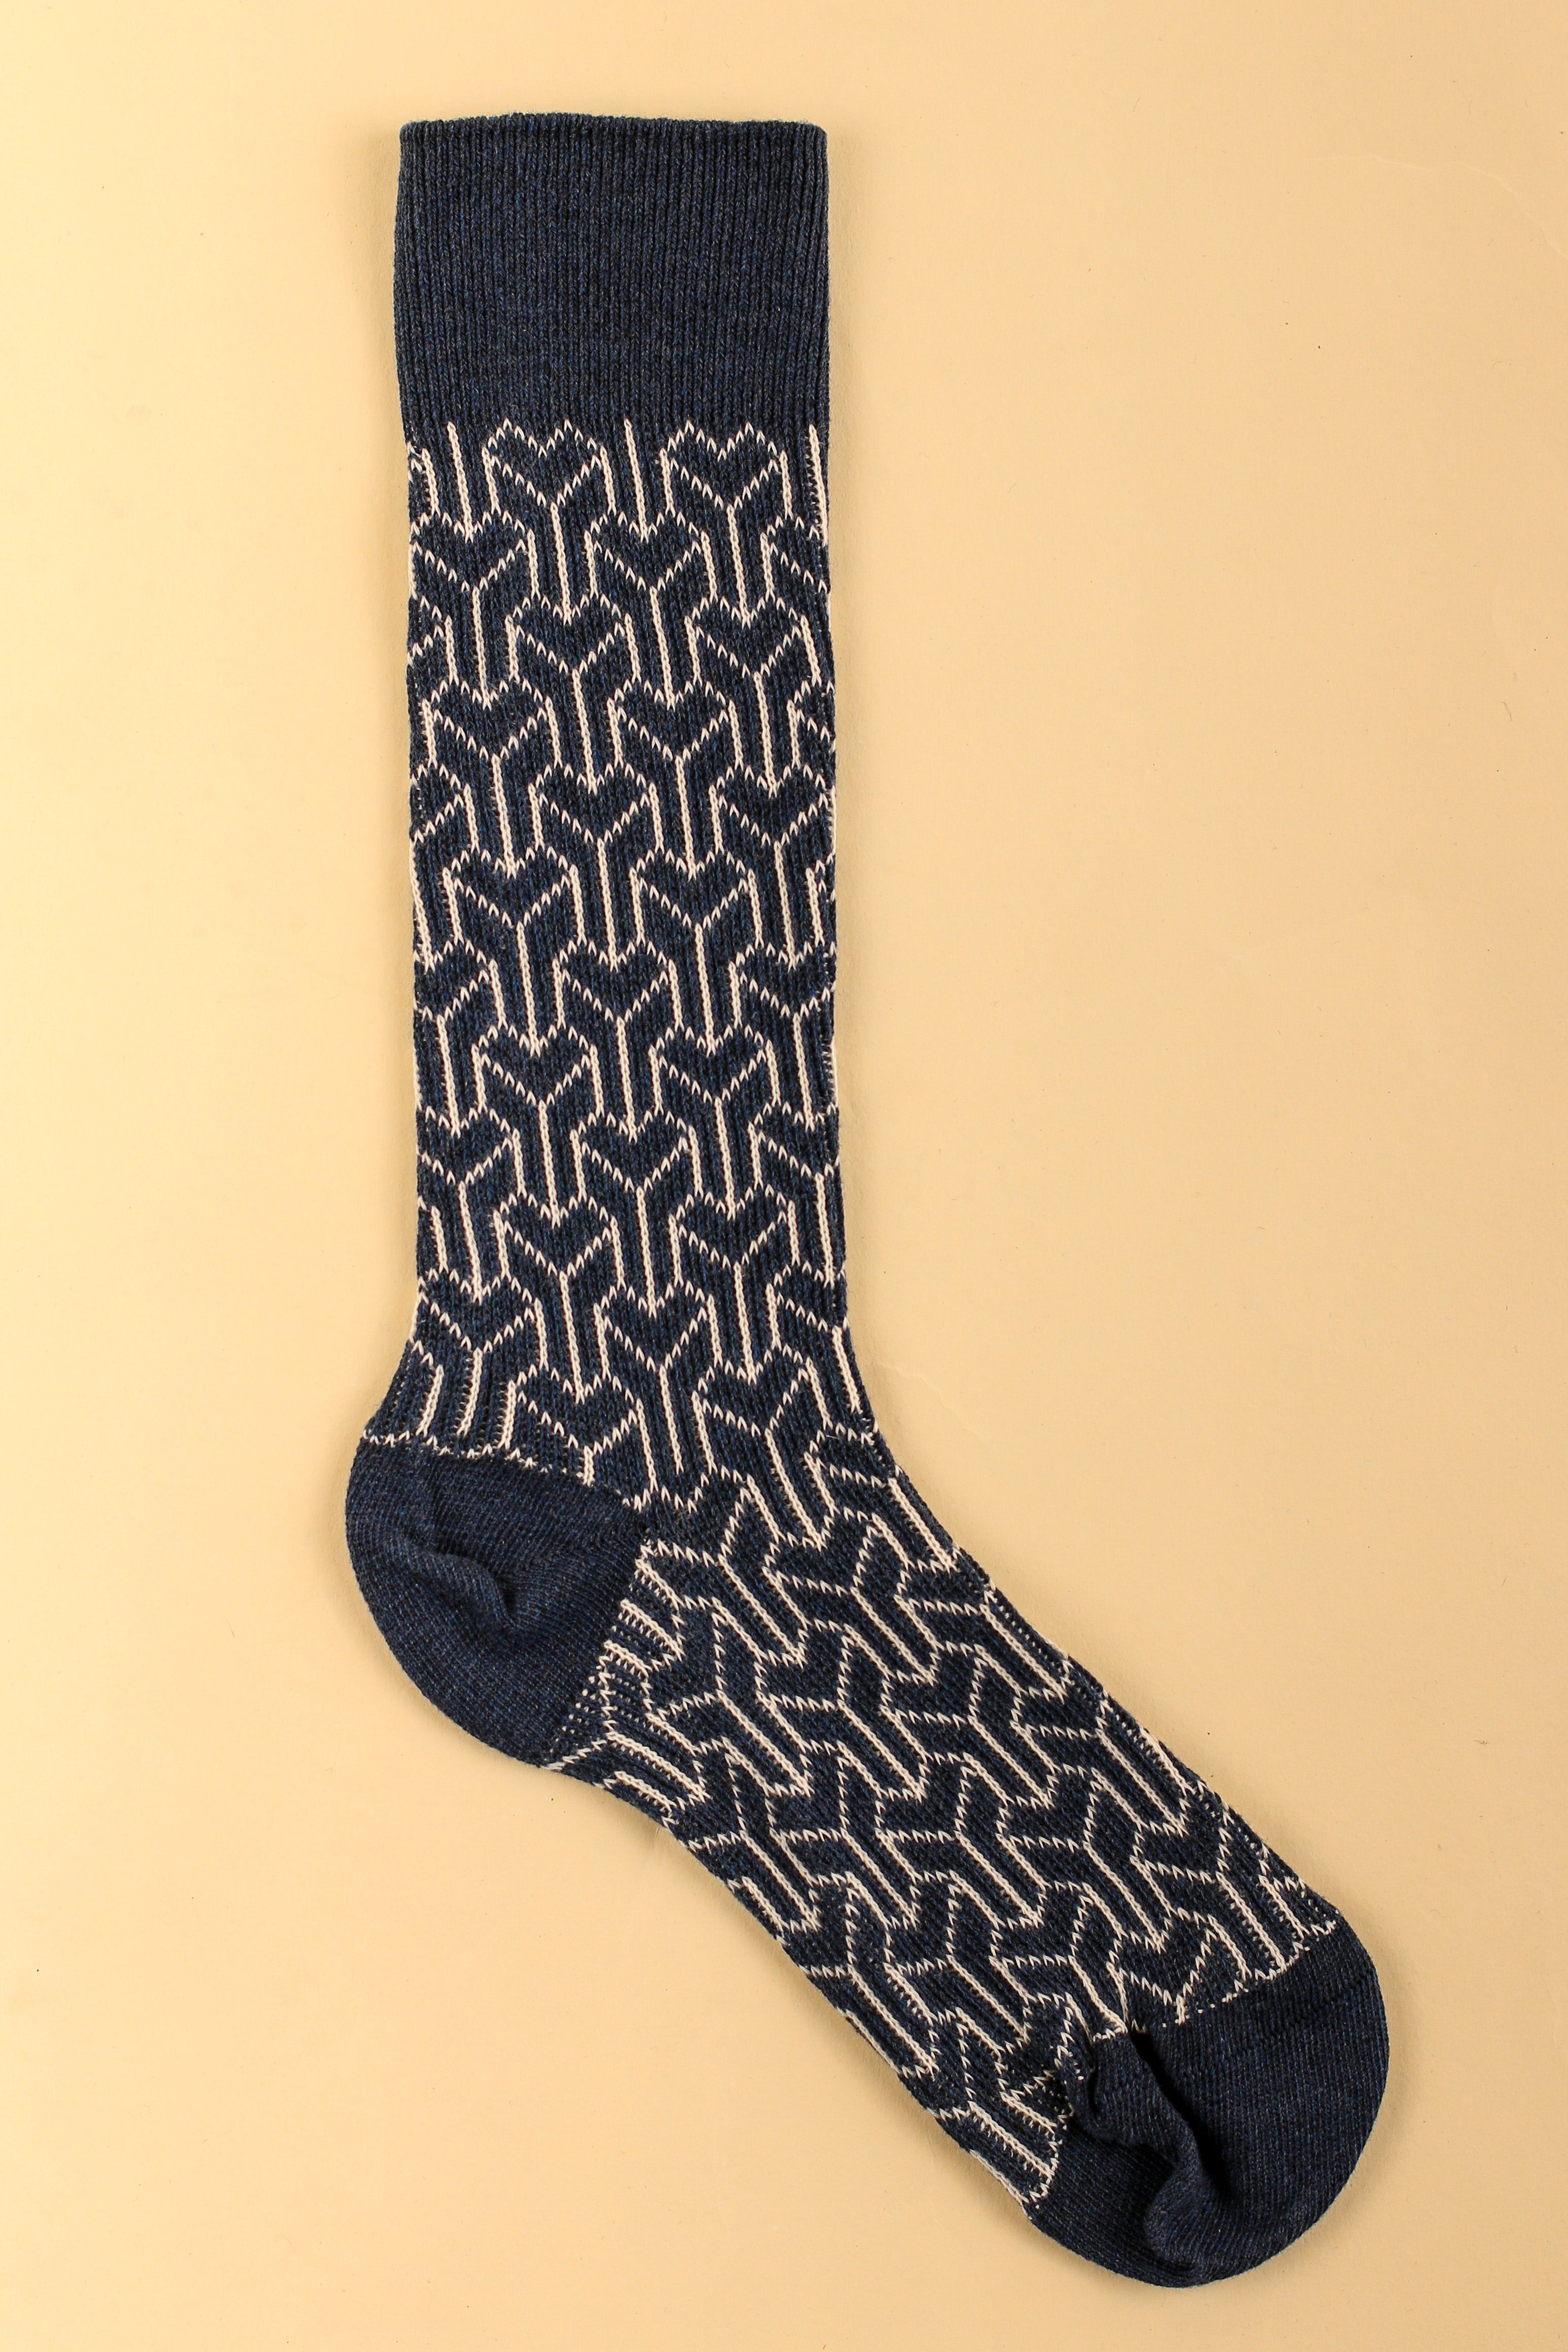 Men's Allergy-Free Trouser Socks (2pairs/Pack)